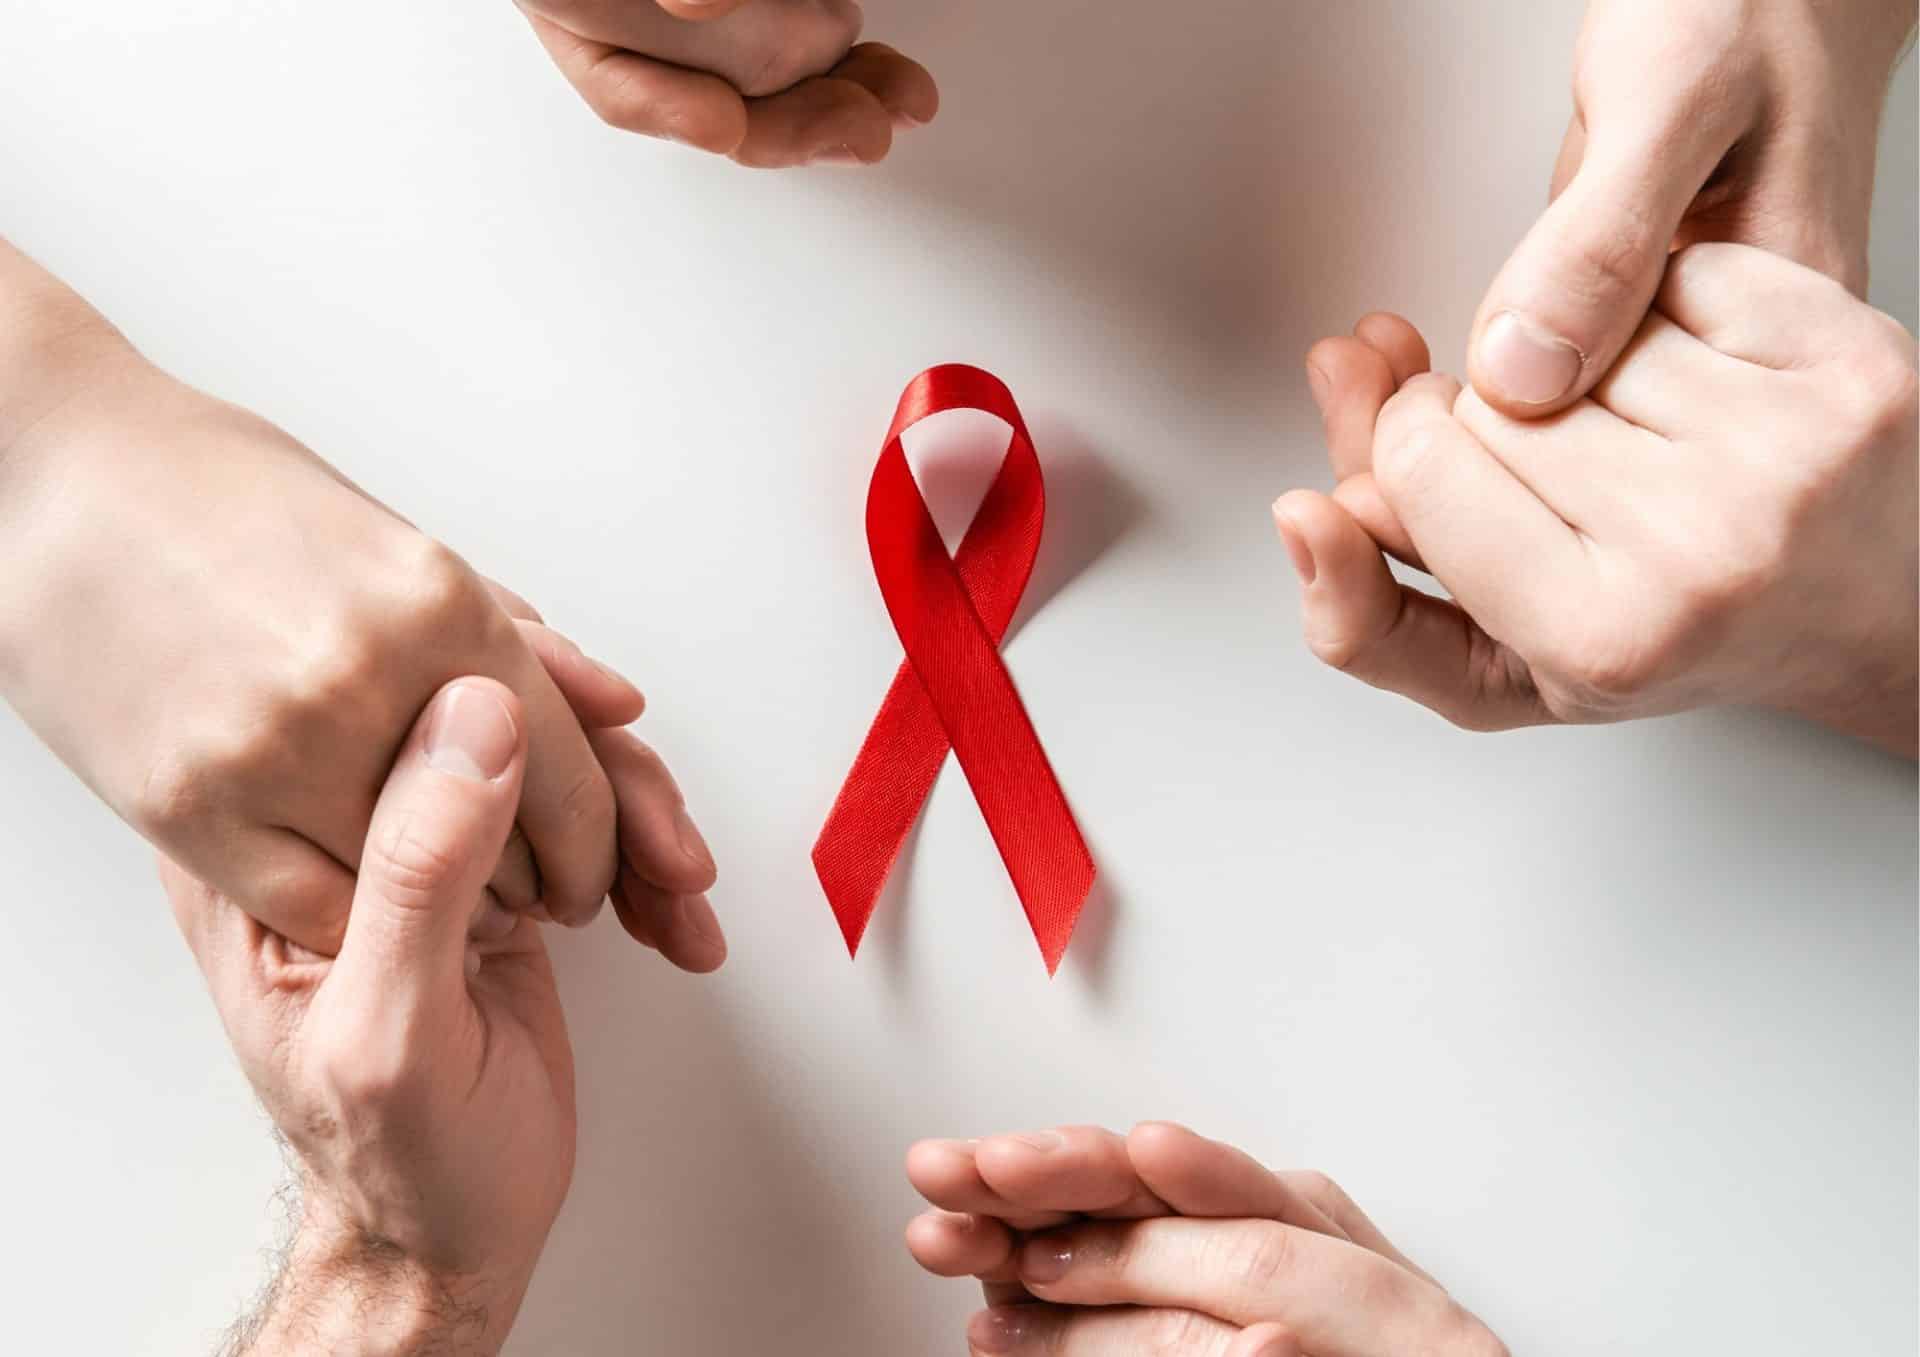 kézfejek egymásba fonódva piros szalaggal az AIDS összefogása ellen